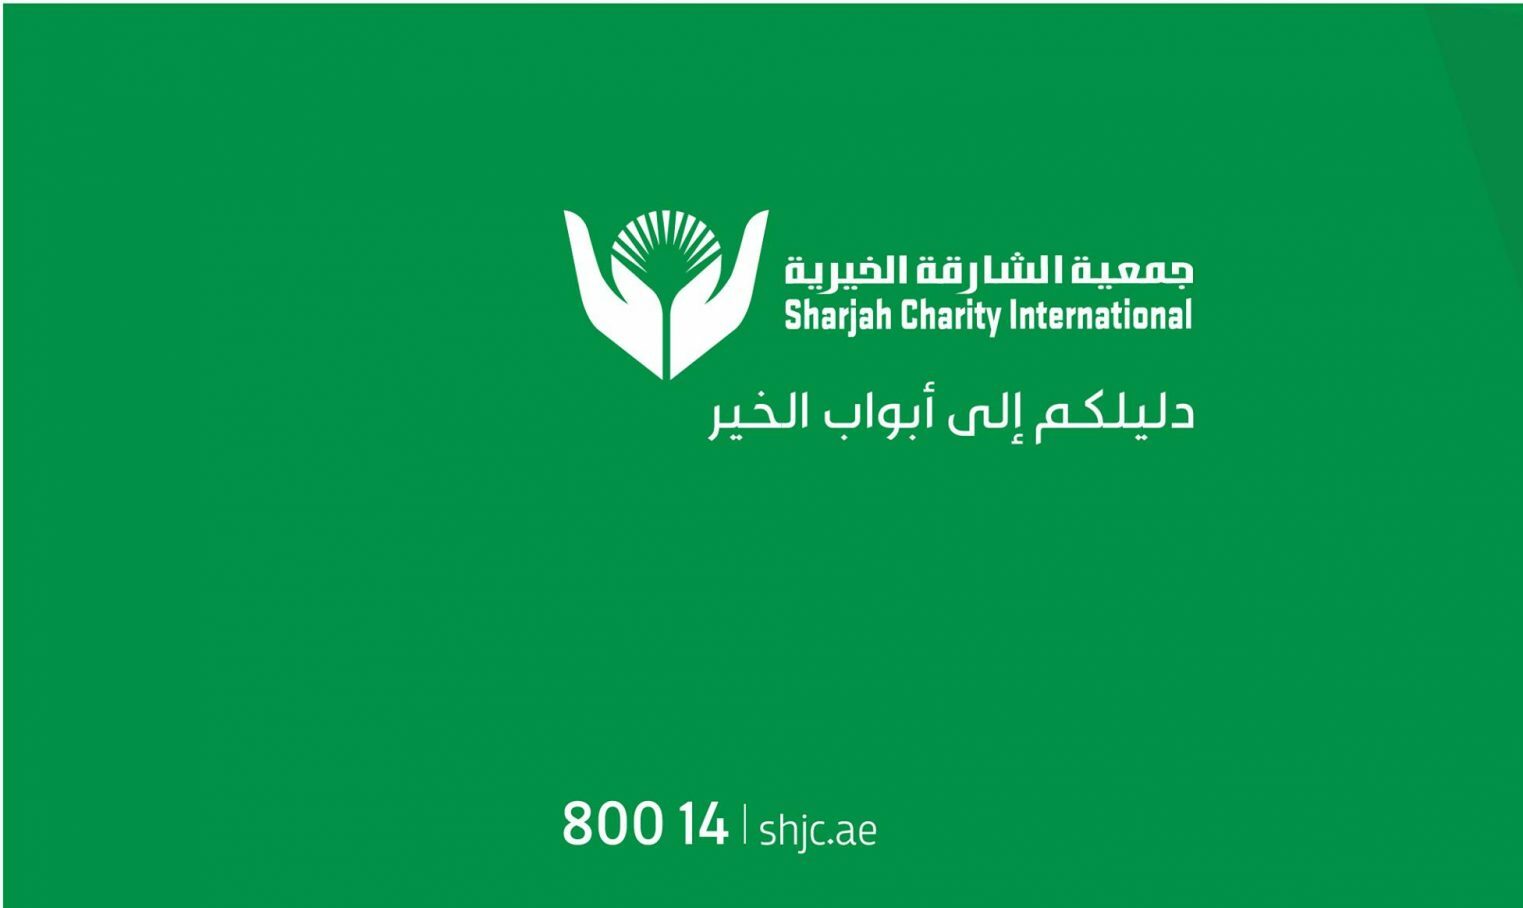 أرقام جمعية الشارقة الخيرية وما هي أهم أهداف الجمعية